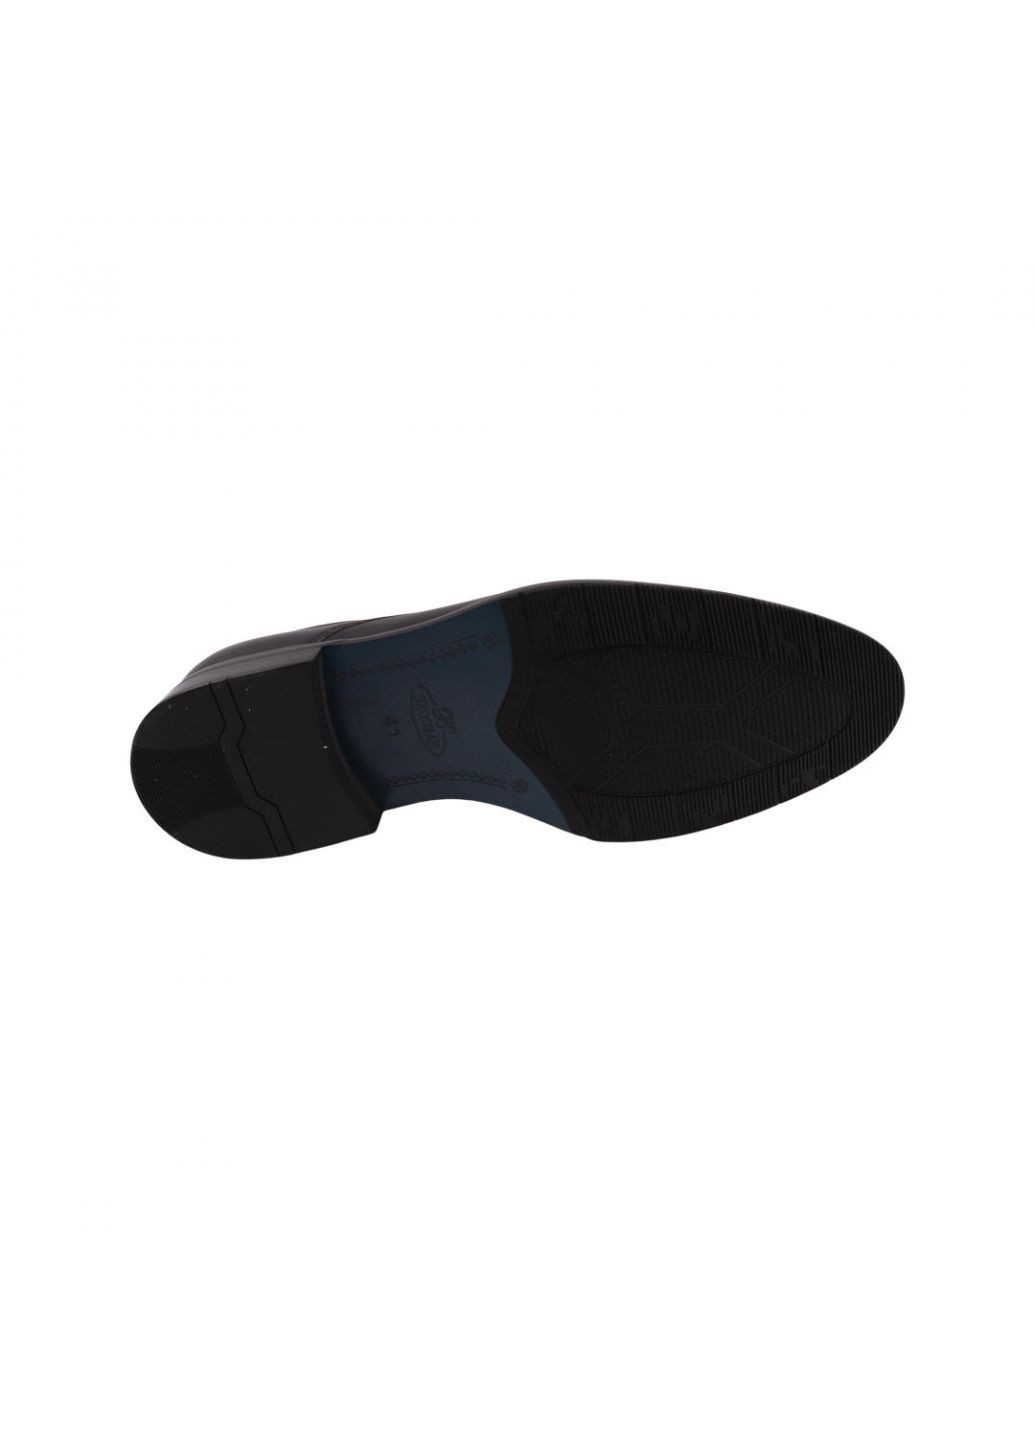 Туфлі чоловічі чорні натуральна шкіра Brooman 902-22dt (257443813)